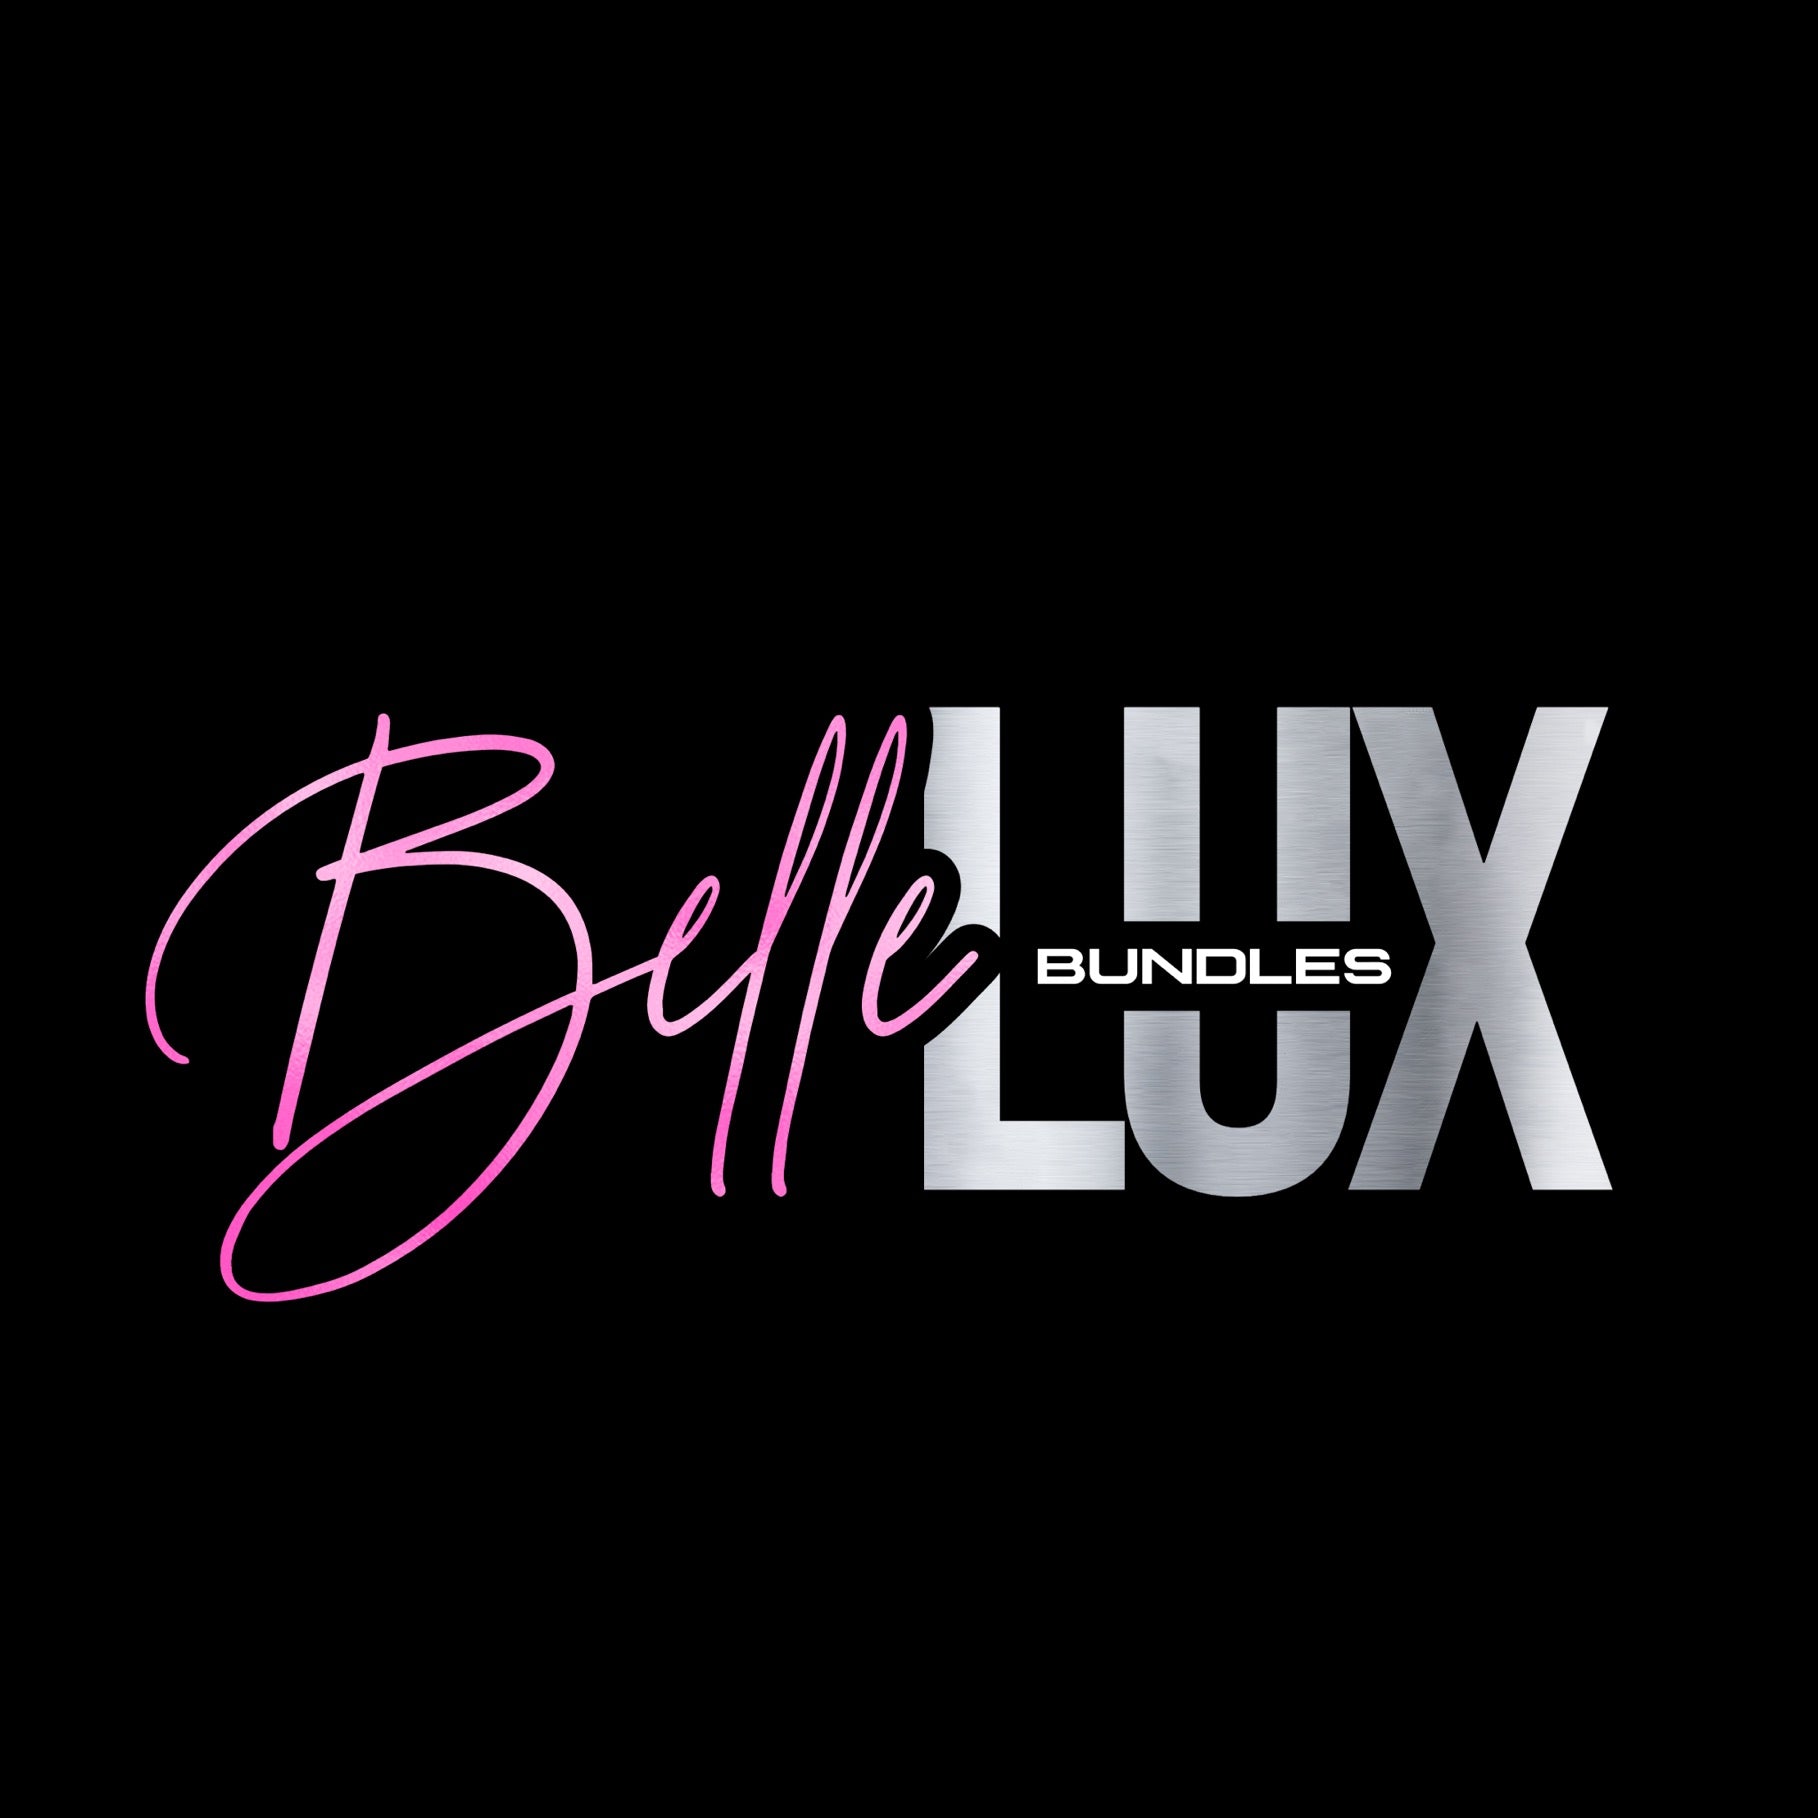 Belleluxbundles LLC